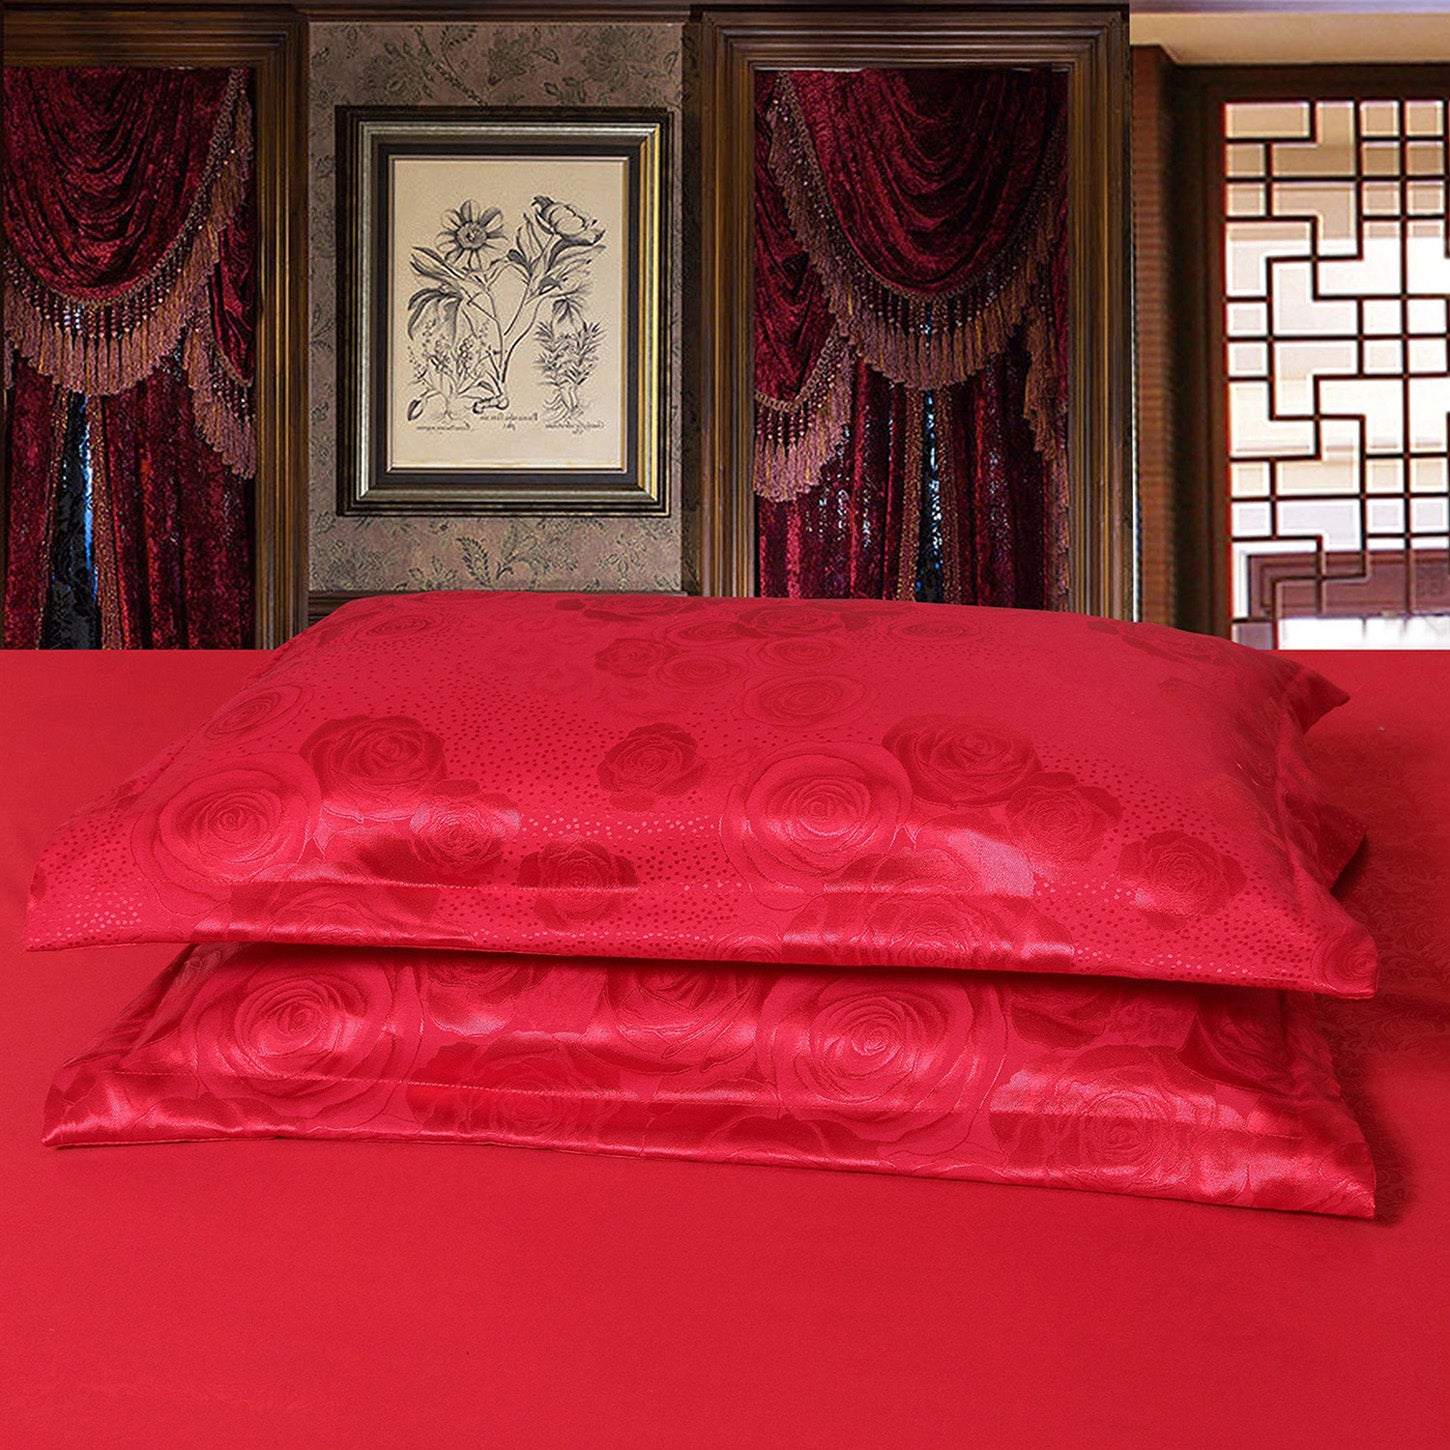 4-Pcs Tom Glamour jacquard Red Duvet Set